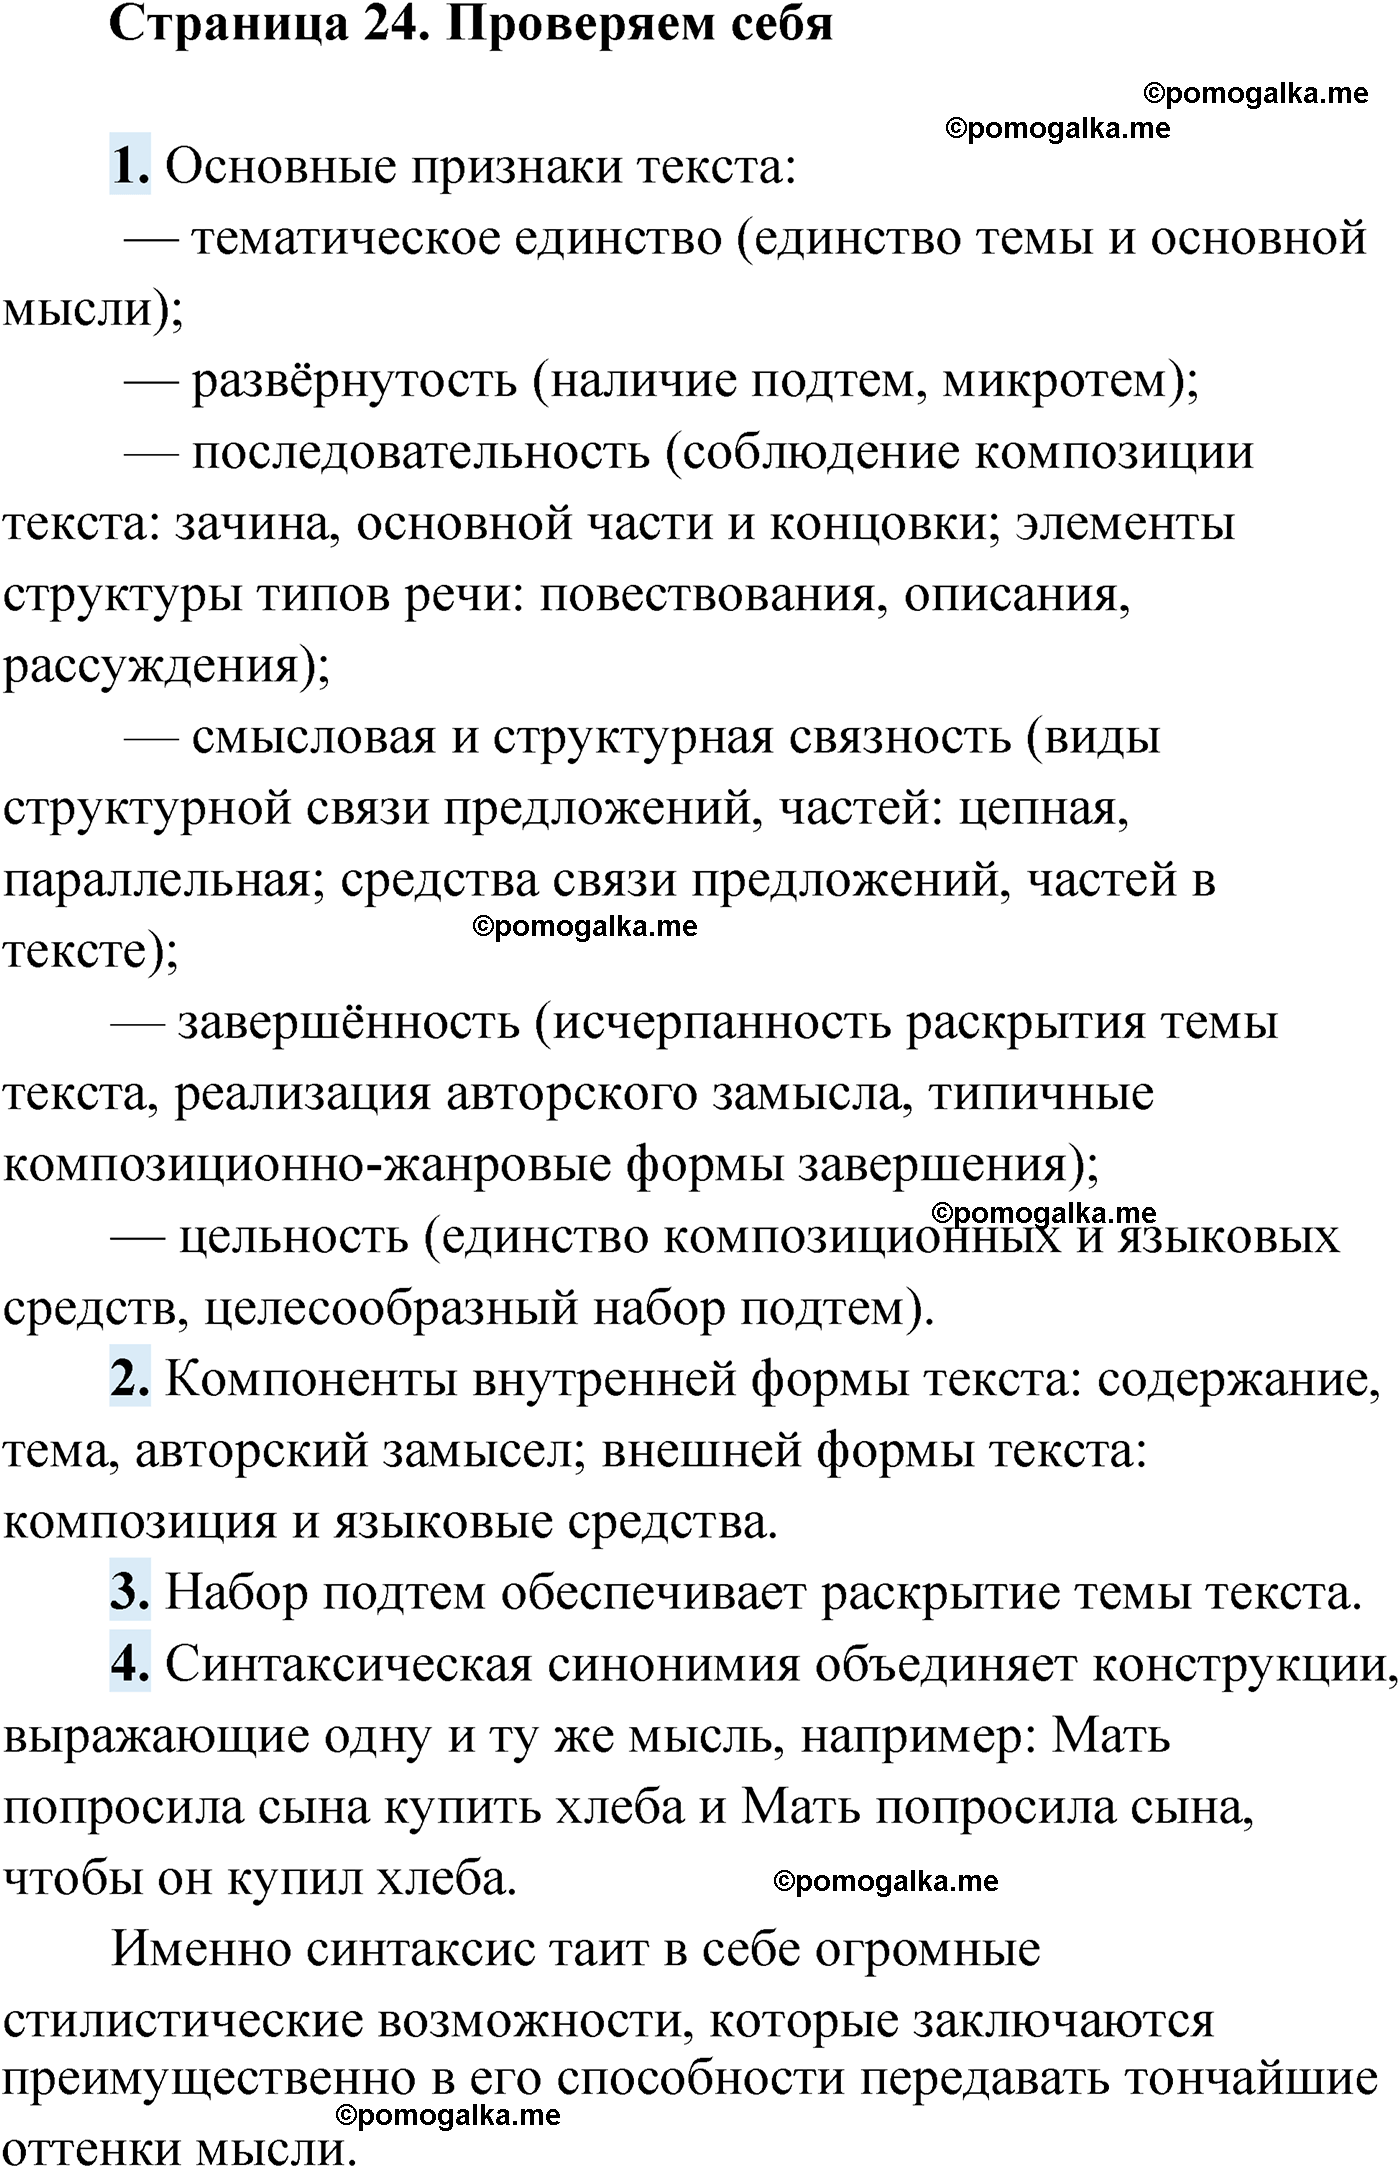 Проверь себя, Страница 24 русский язык 9 класс Мурина 2019 год